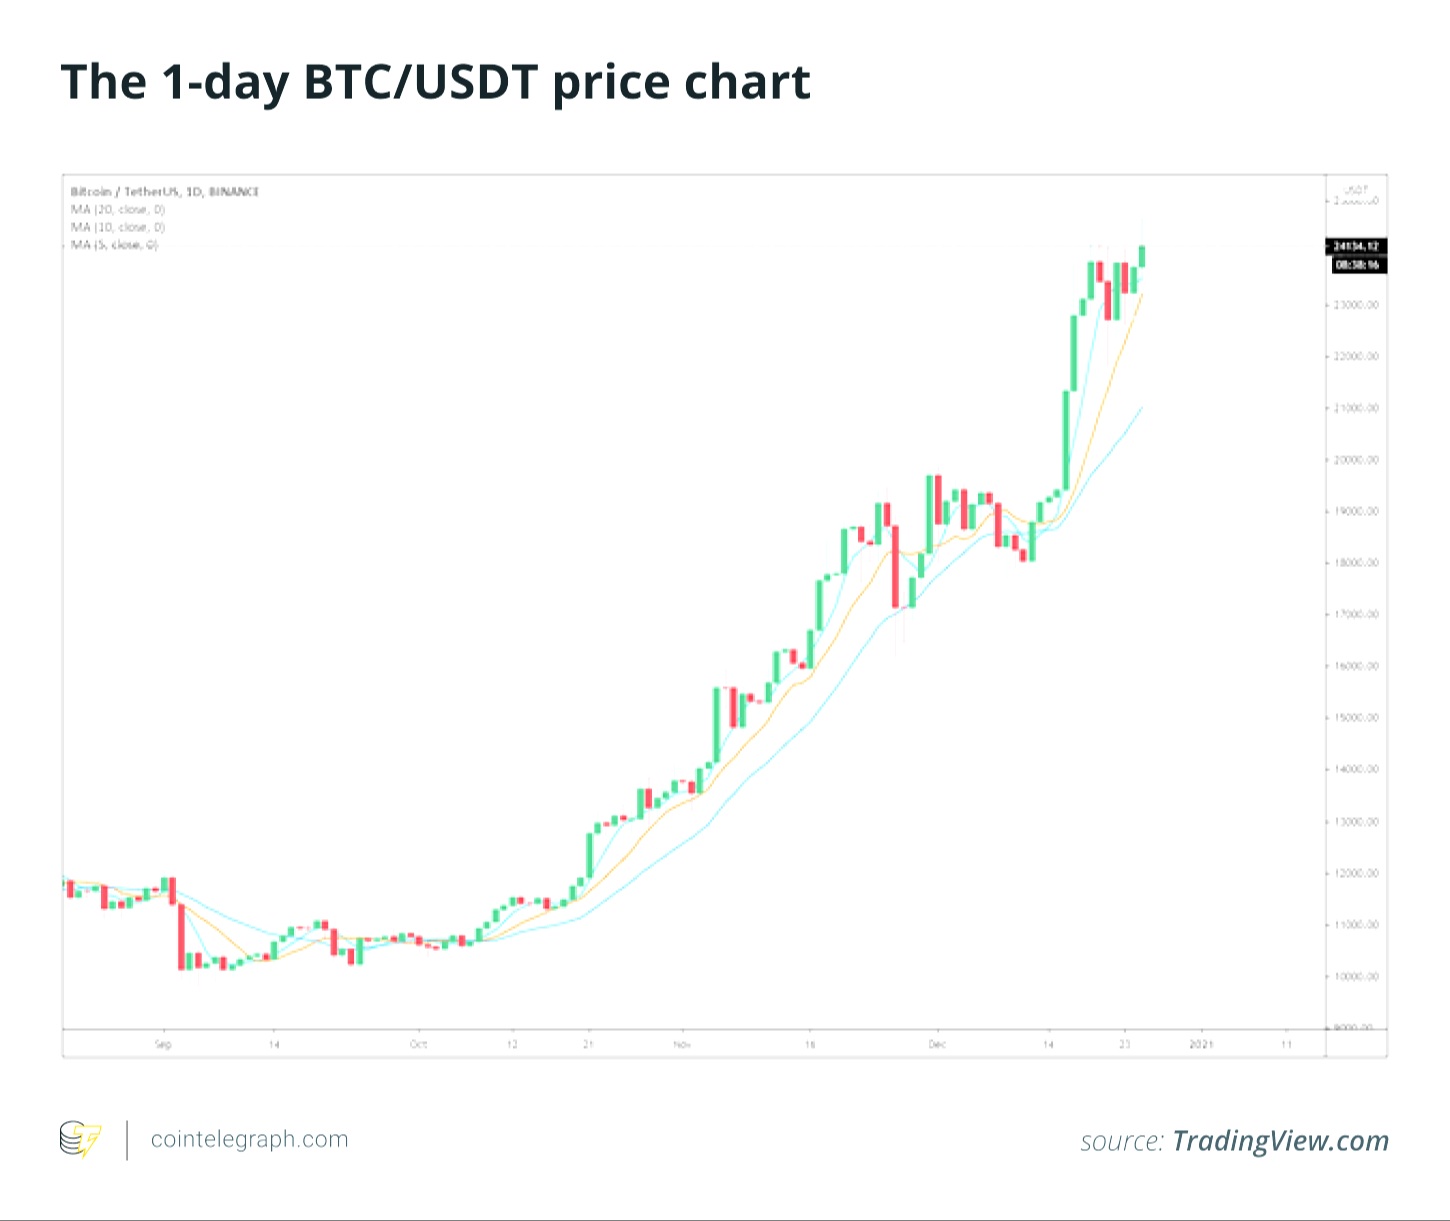 Giá bitcoin tăng lên 24,6 nghìn đô-la nhưng không rõ hướng tăng tiếp theo